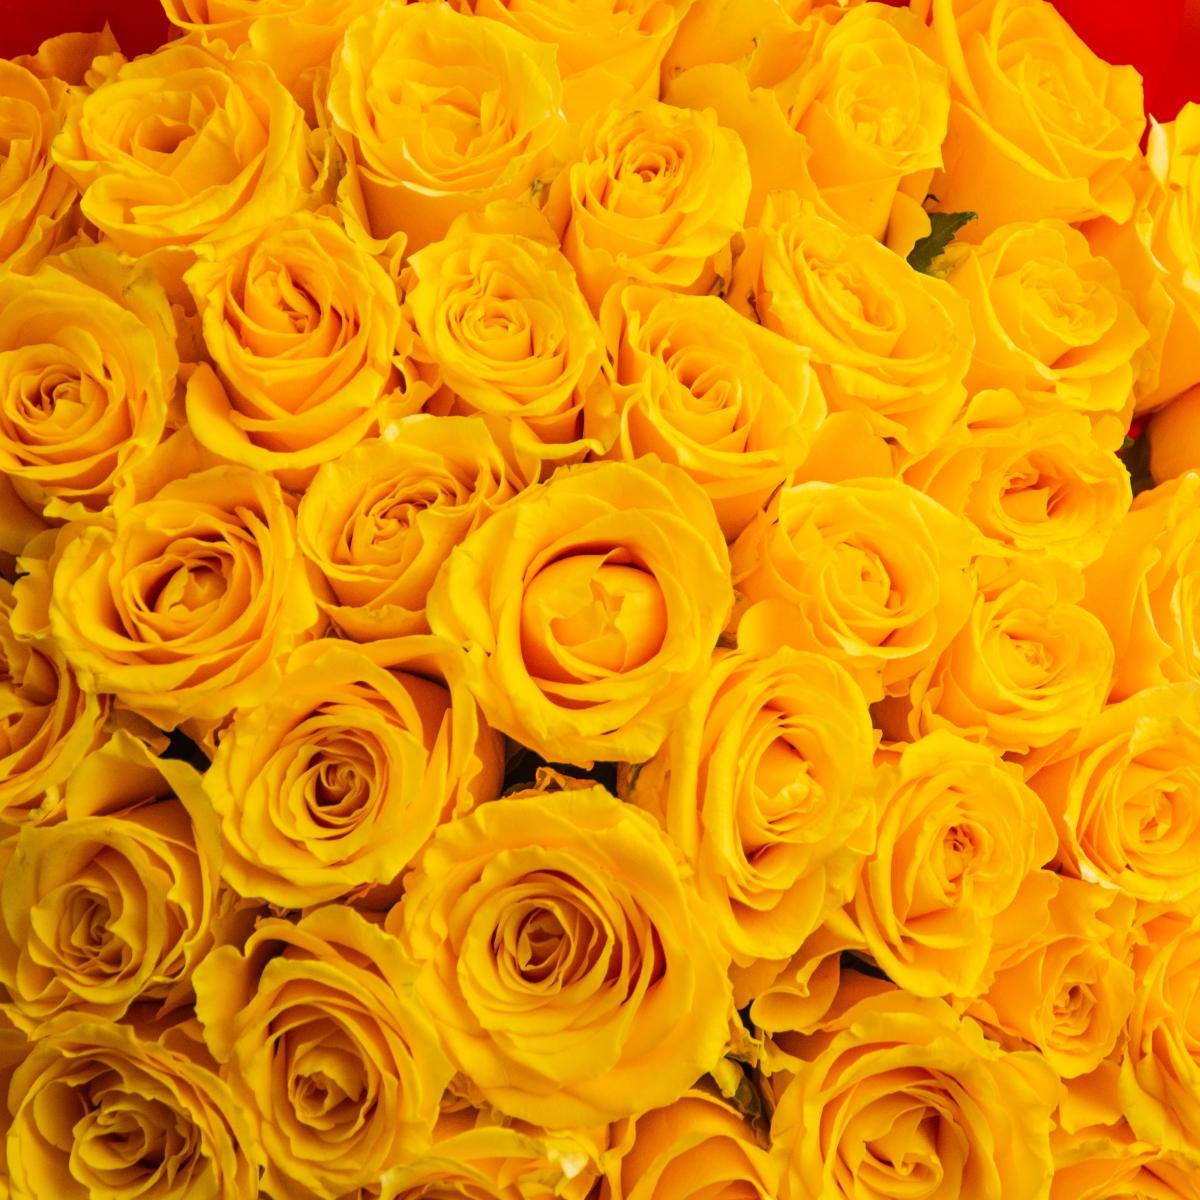 Букет цветов из 51 розы огненного цвета